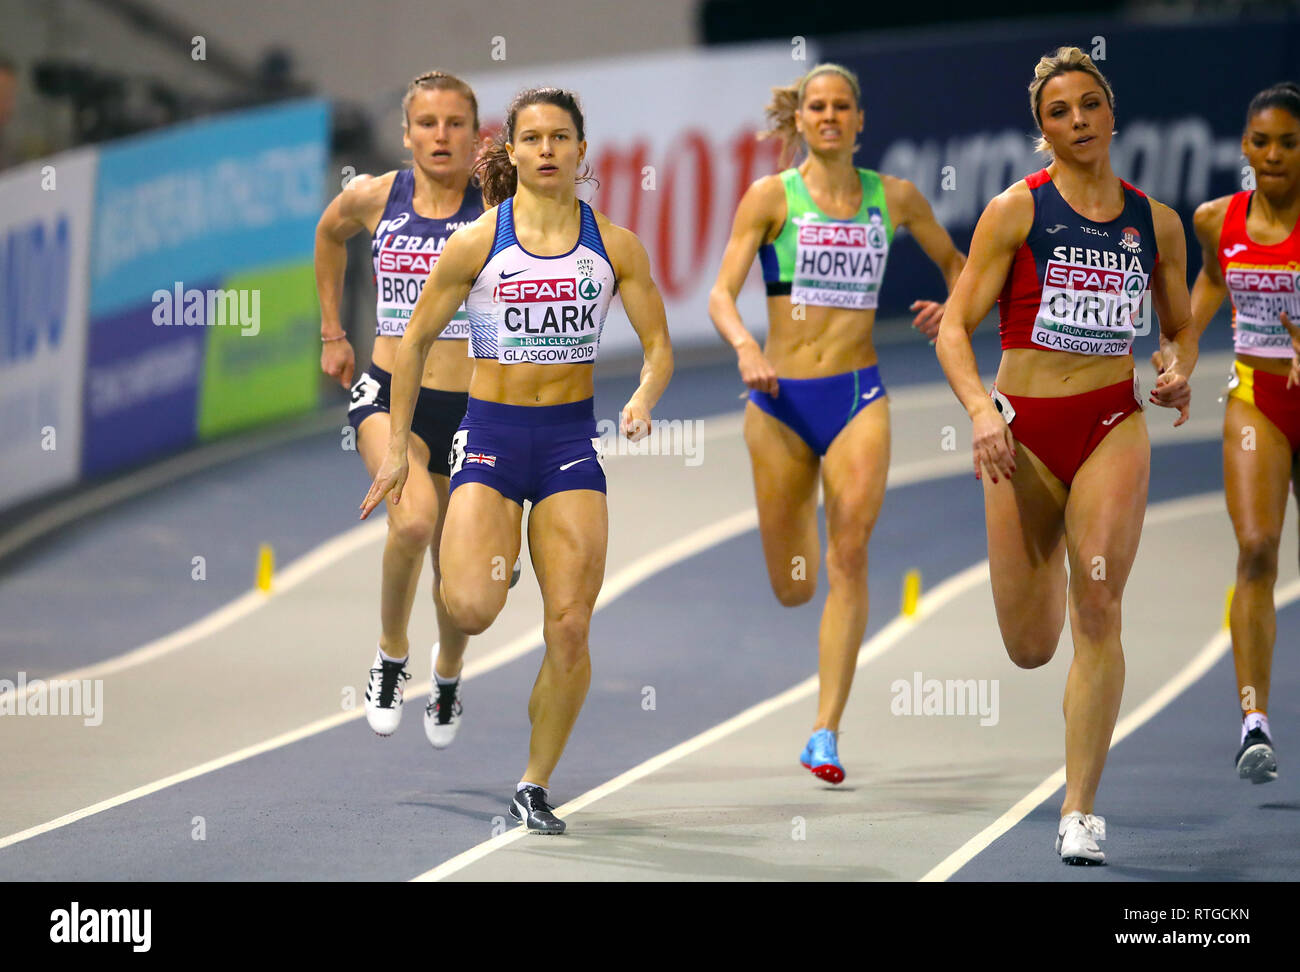 Gran Bretagna Zoey Clark (sinistra) compete in donne 400m 1 di calore durante il giorno uno degli Europei Indoor di Atletica a Emirates Arena, Glasgow. Foto Stock